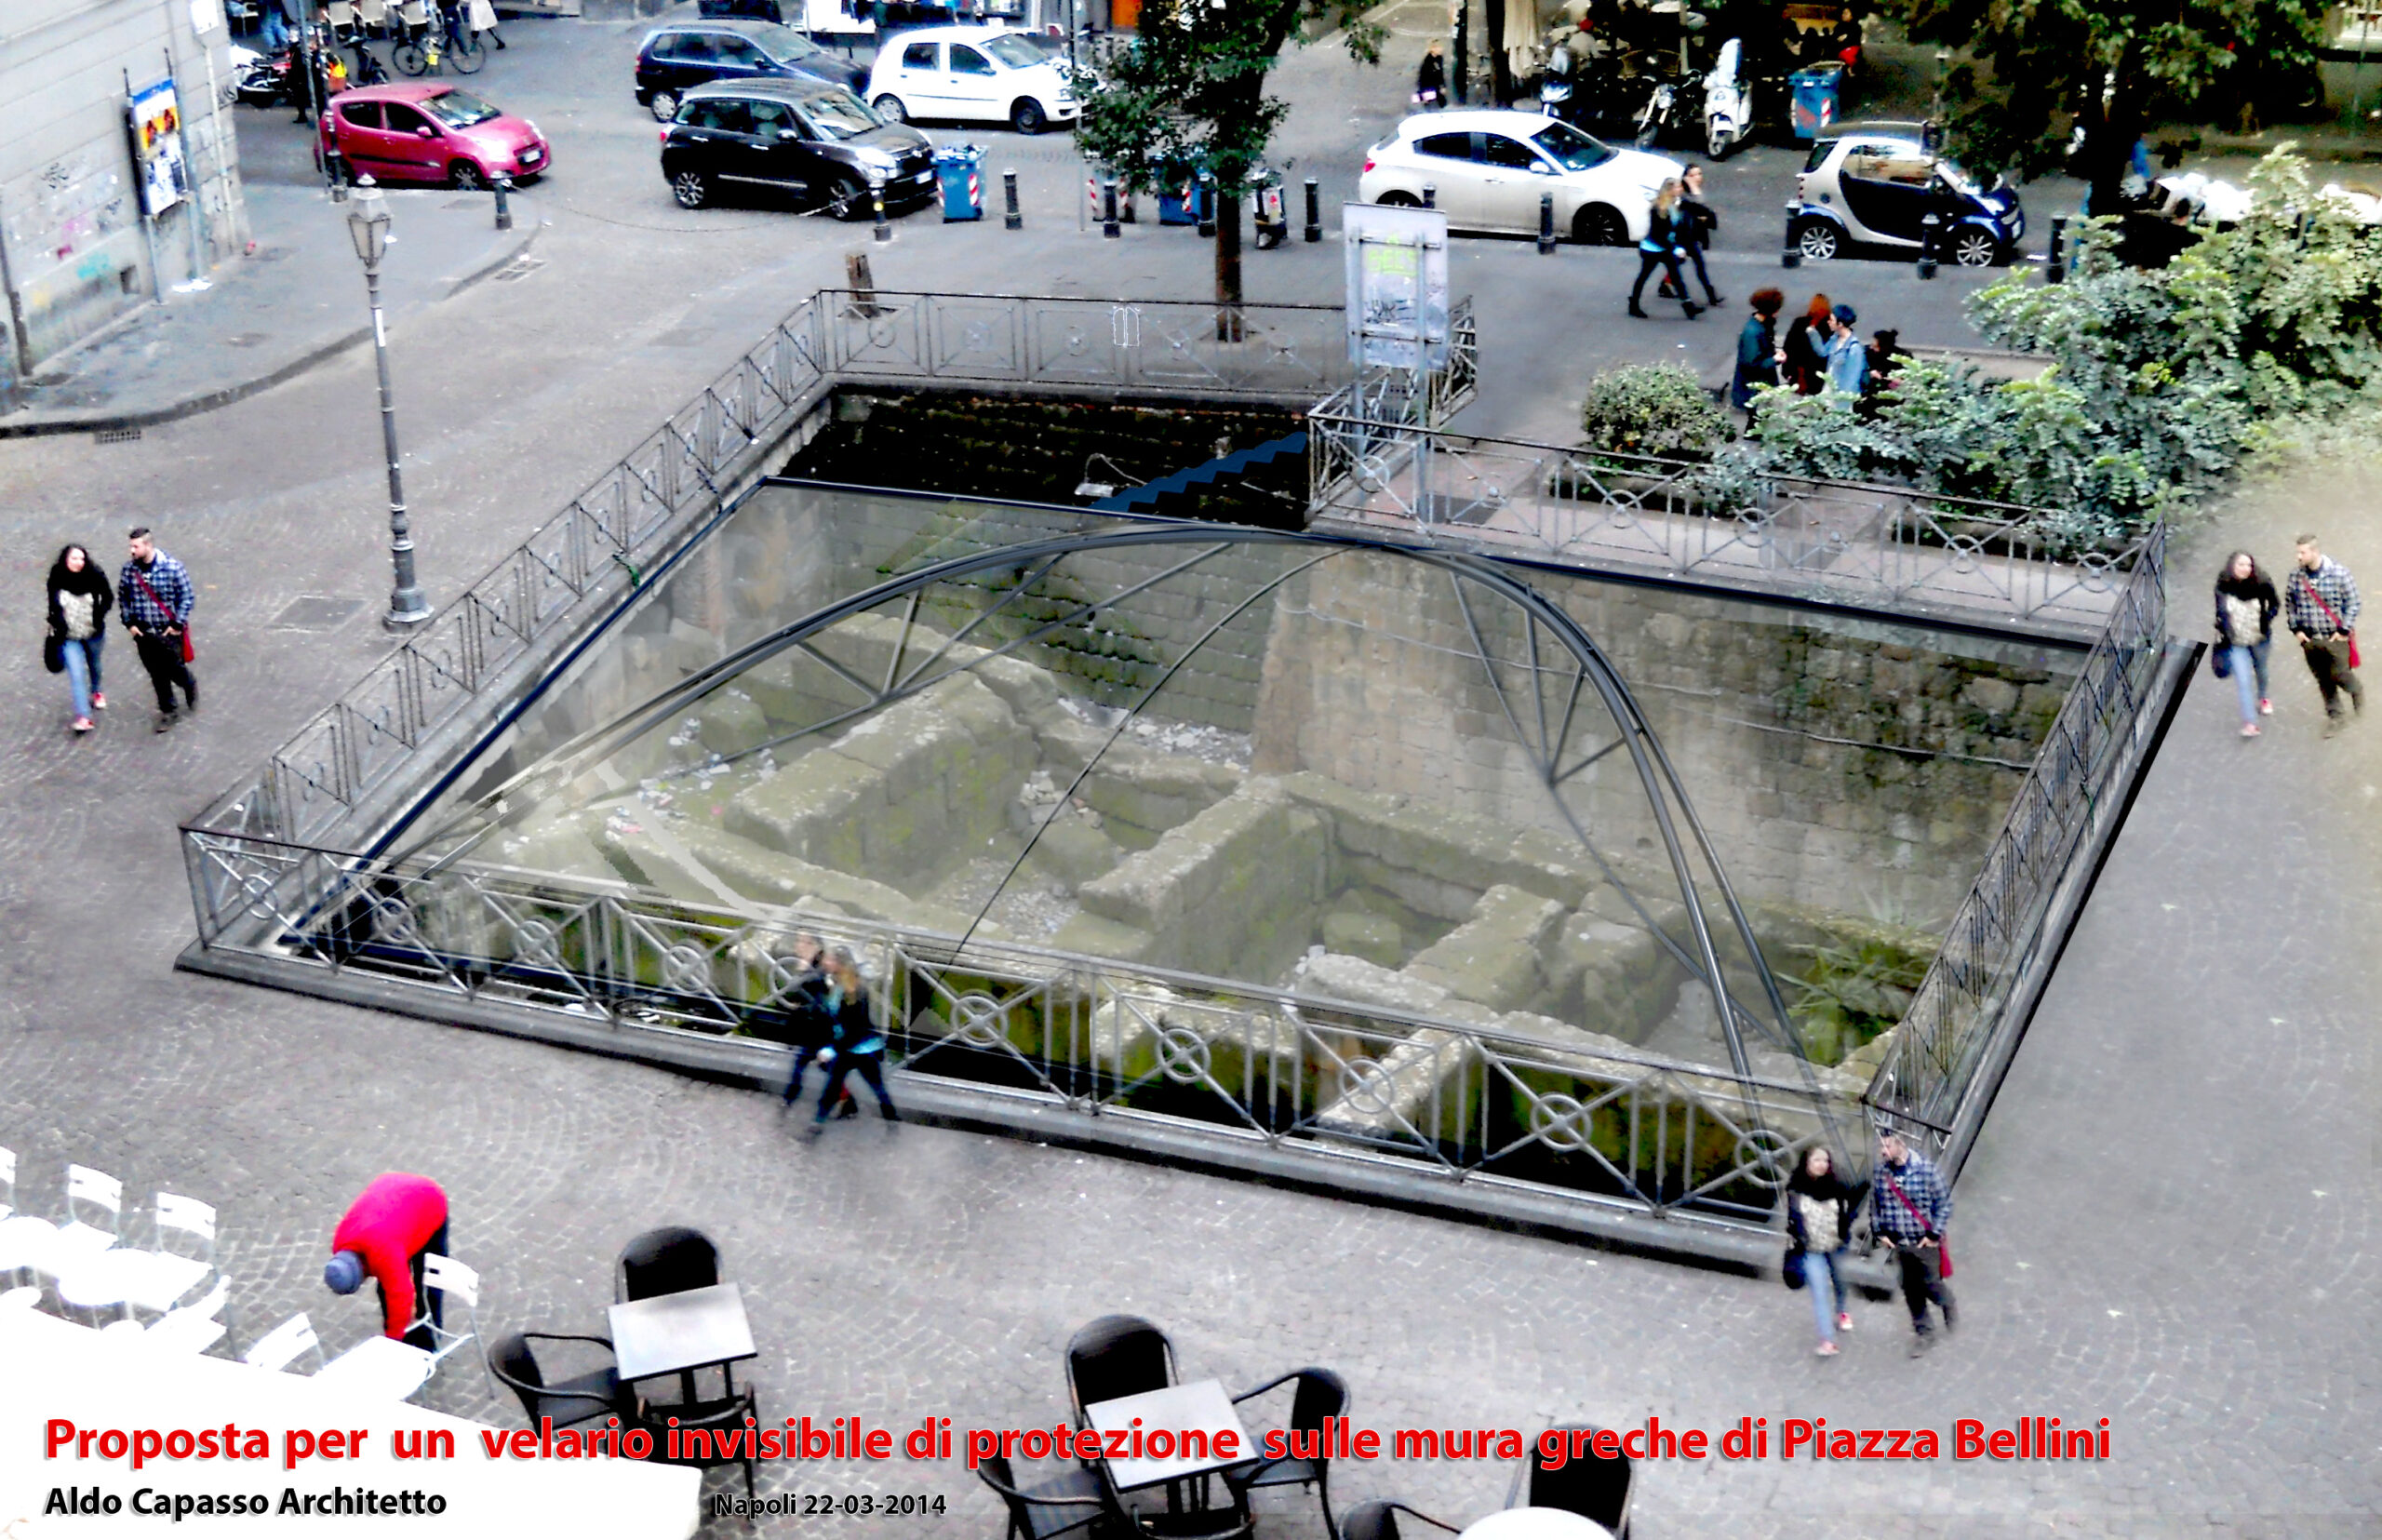 Al momento stai visualizzando Protezione degli scavi archeologici di Piazza Bellini